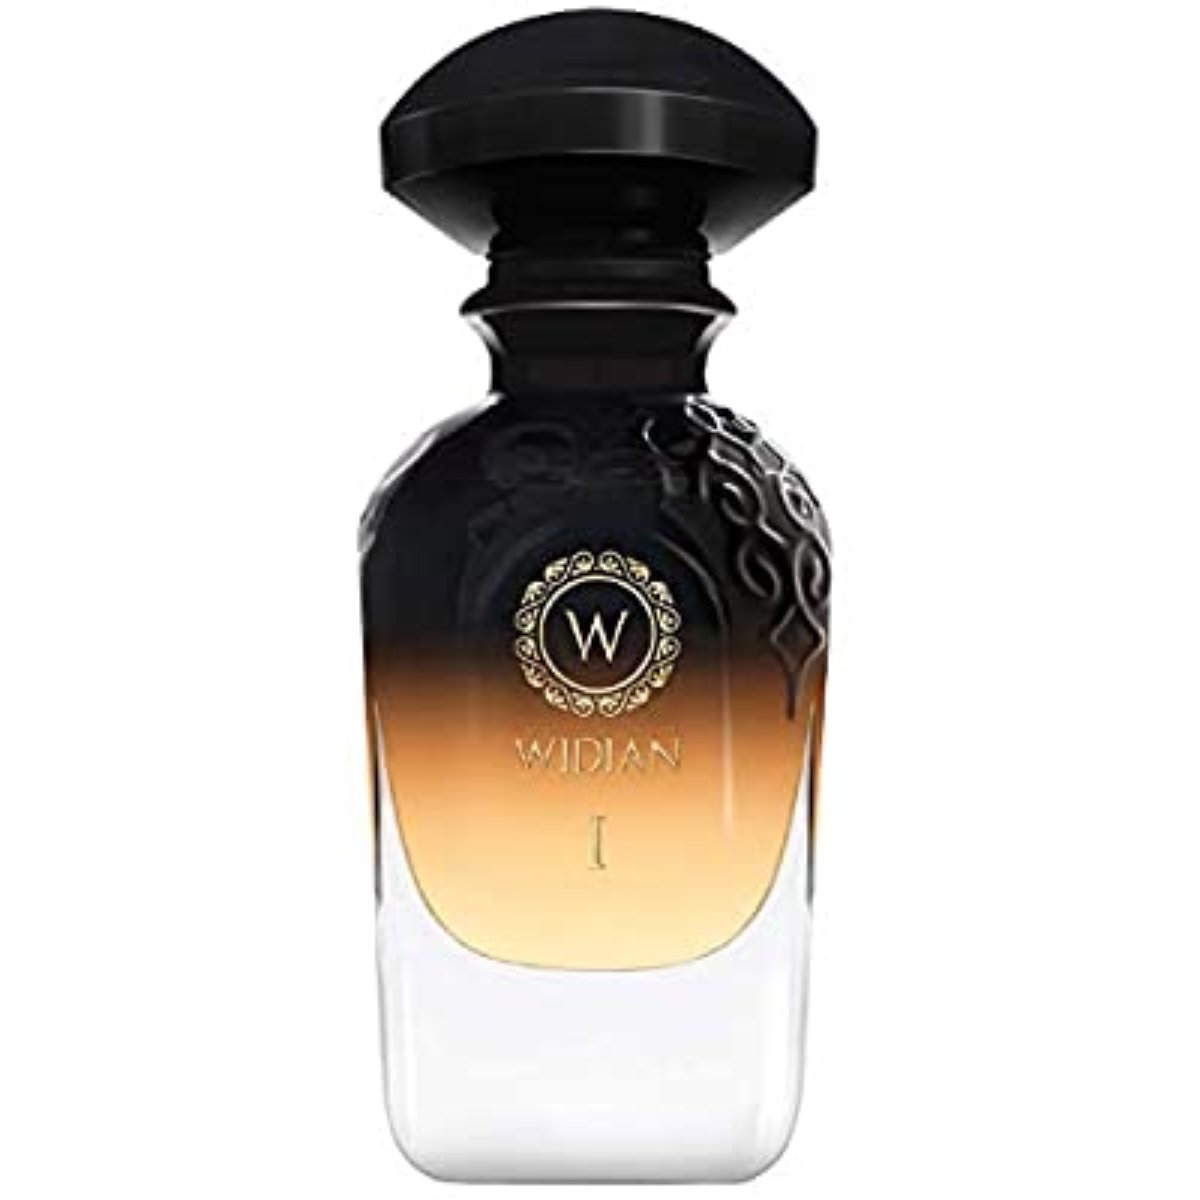 Widian Arabia Black I Eau De Parfum For Unisex 50ML